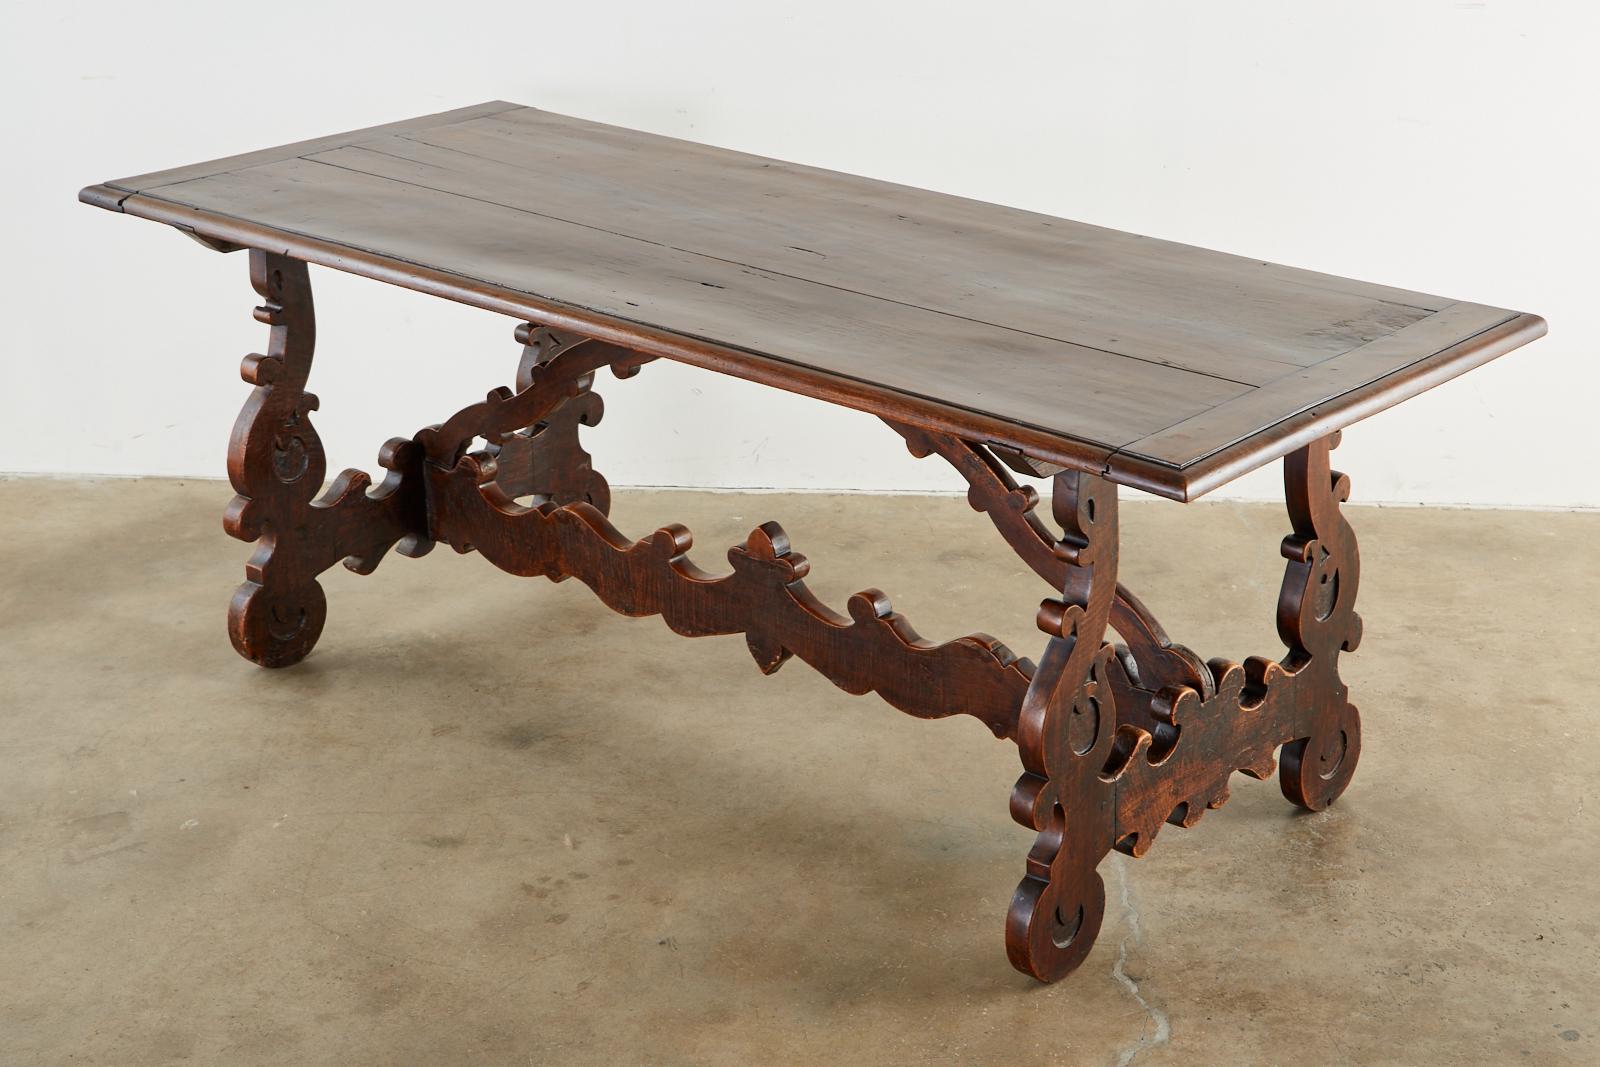 Magnifique table de réfectoire ou de salle à manger baroque italienne du XVIIIe siècle. Fabriqué à partir d'épaisses planches de noyer avec un assemblage à tenon et mortaise. La base de style tréteau est soutenue par des pieds sculptés en forme de